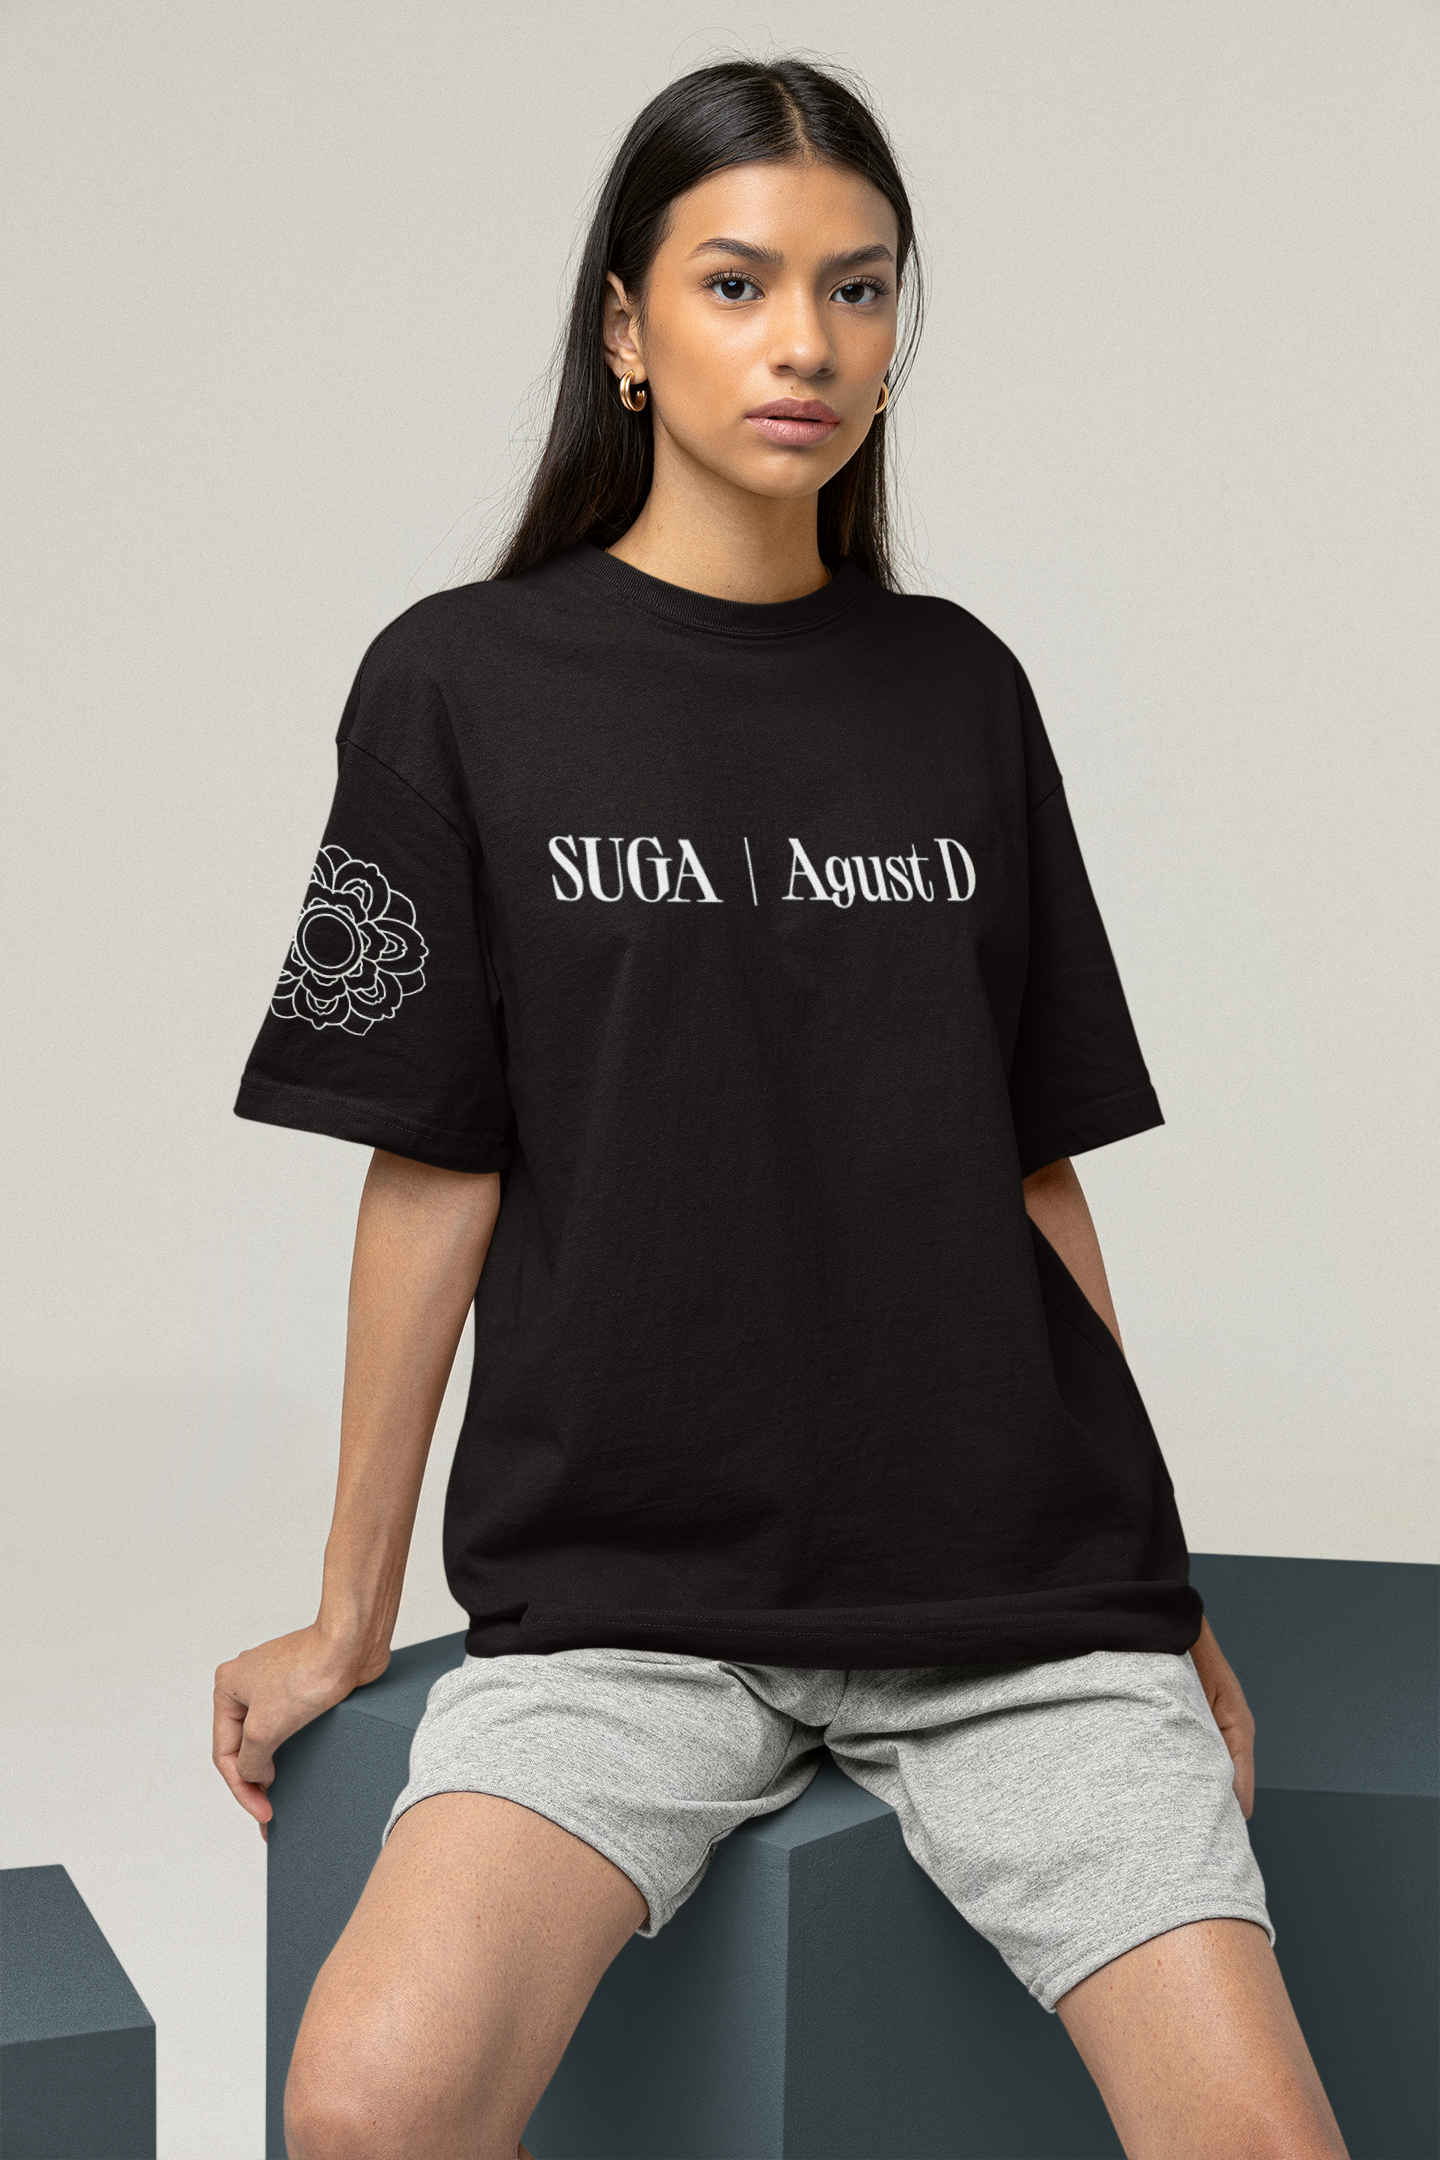 Suga |Agust D concert Tshirt